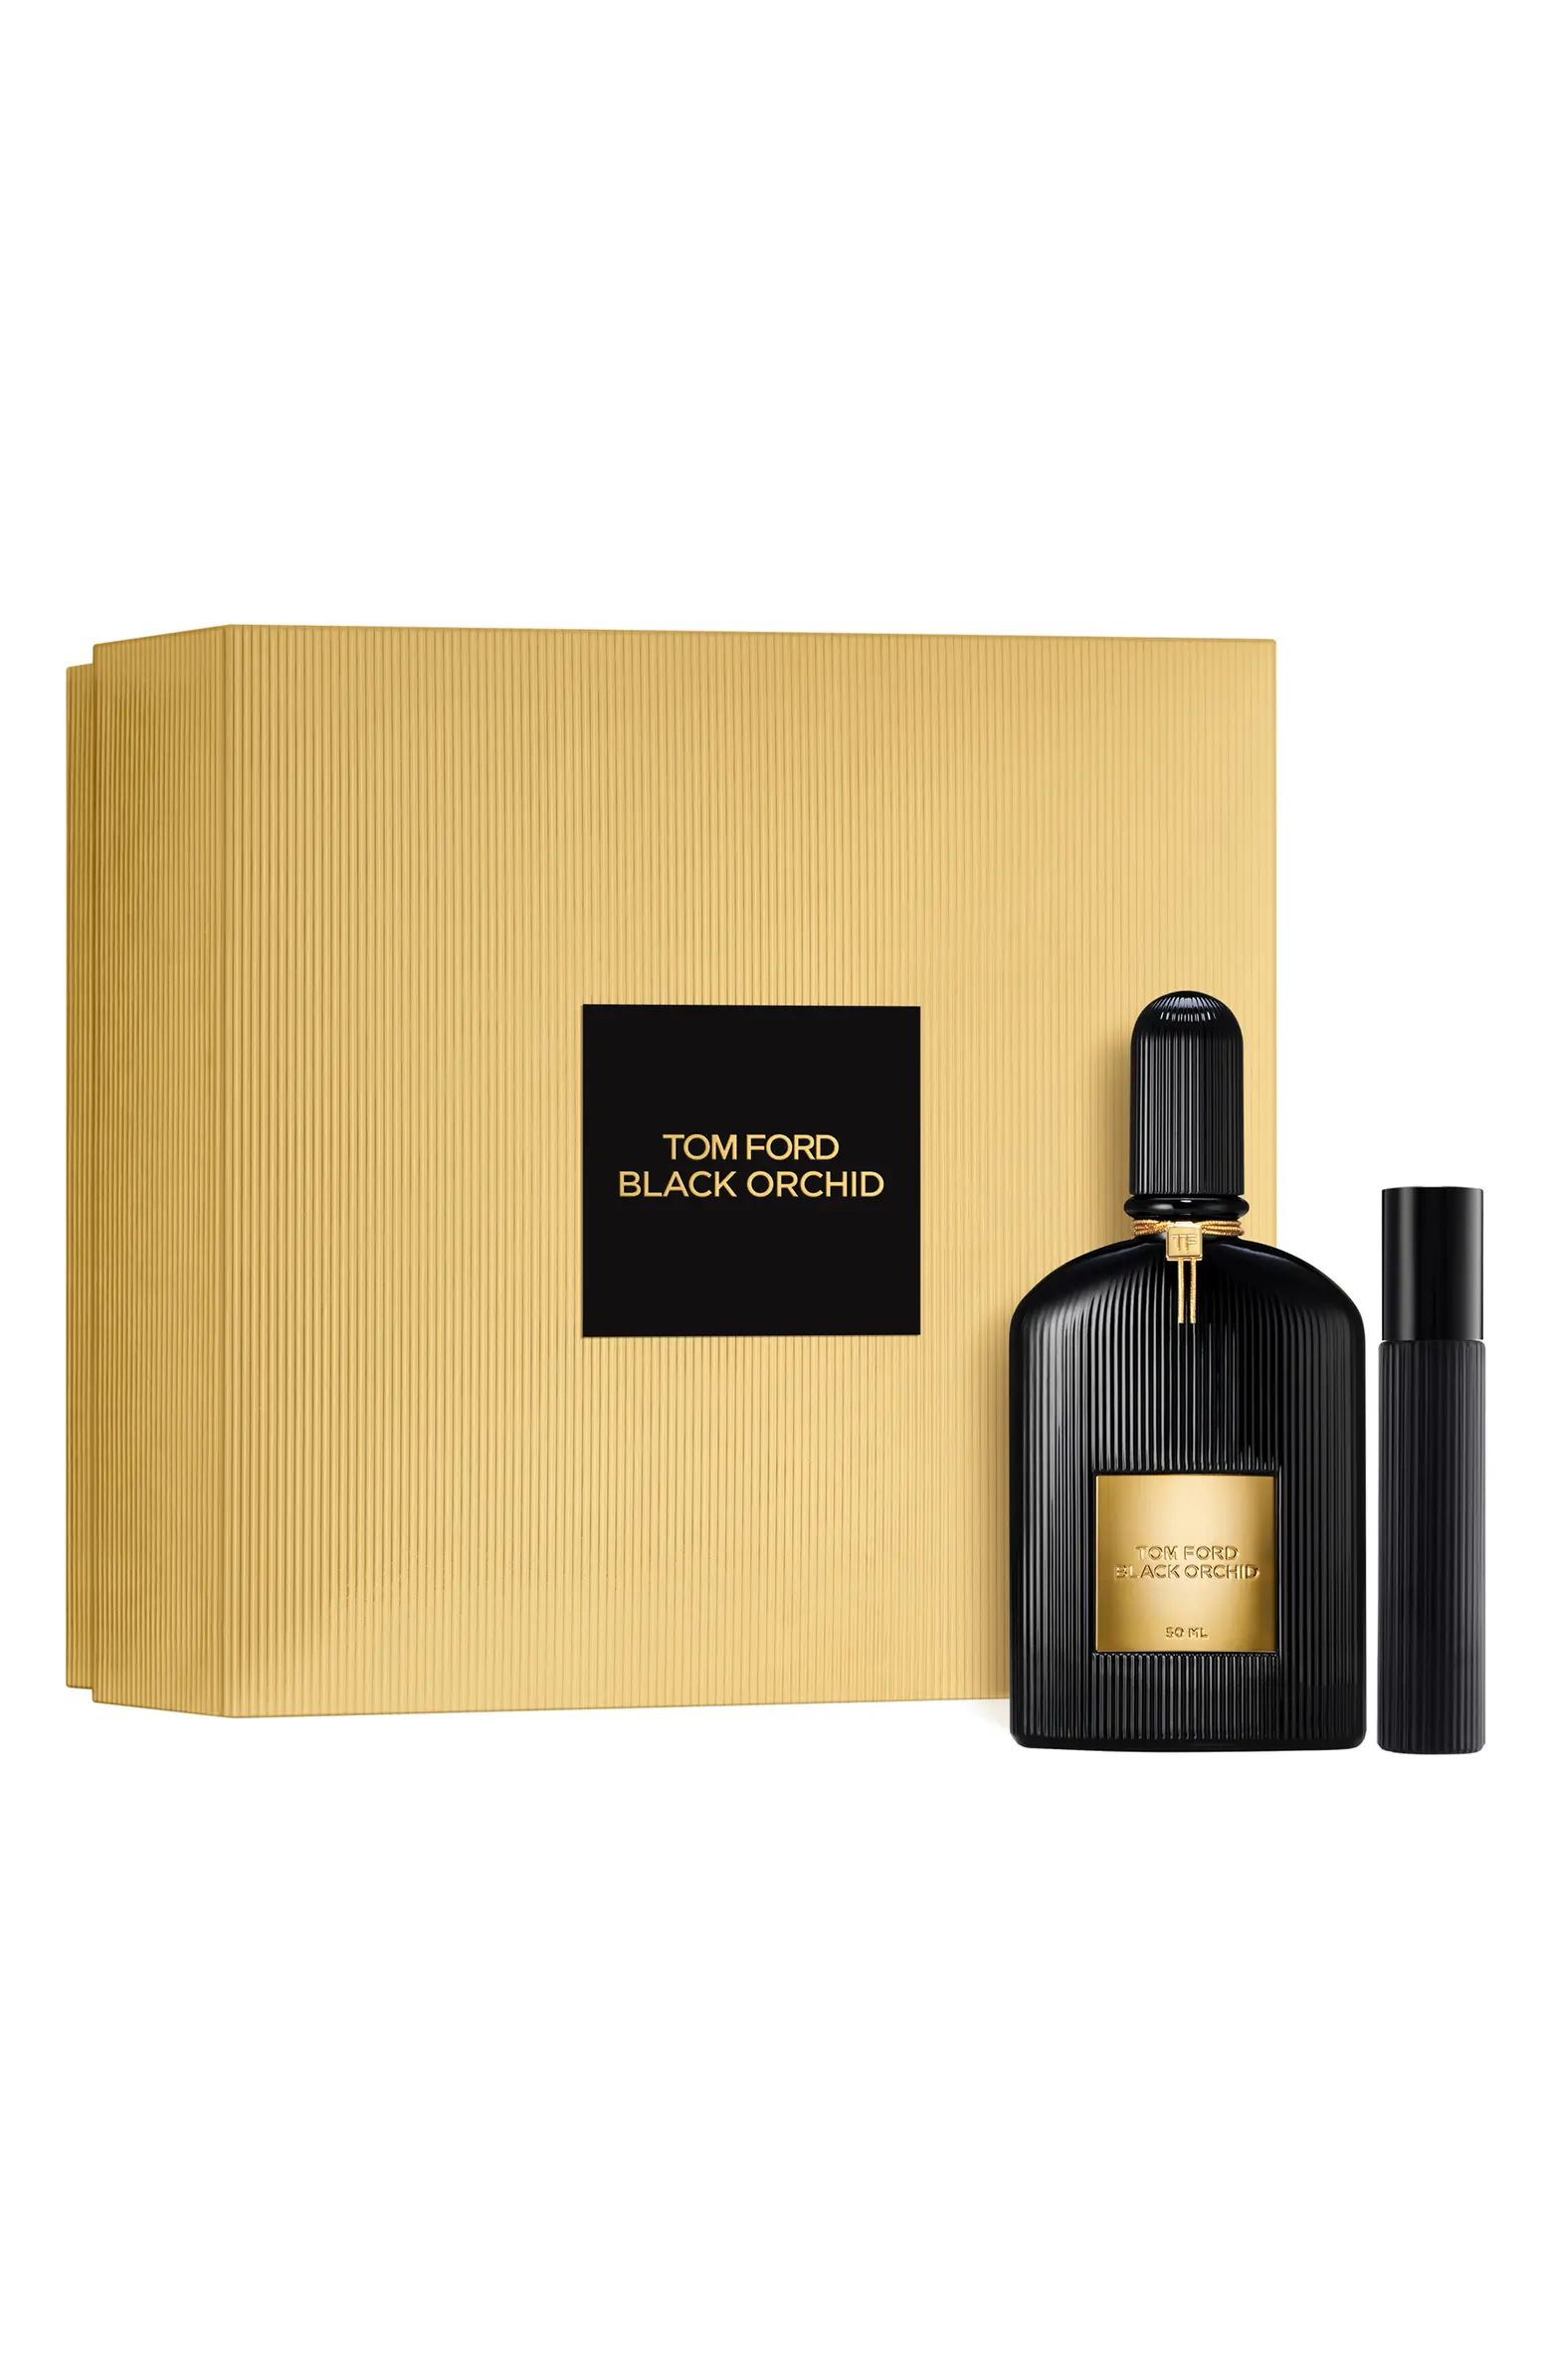 Black Orchid Eau de Parfum 2-Piece Gift Set $200 Value | Nordstrom